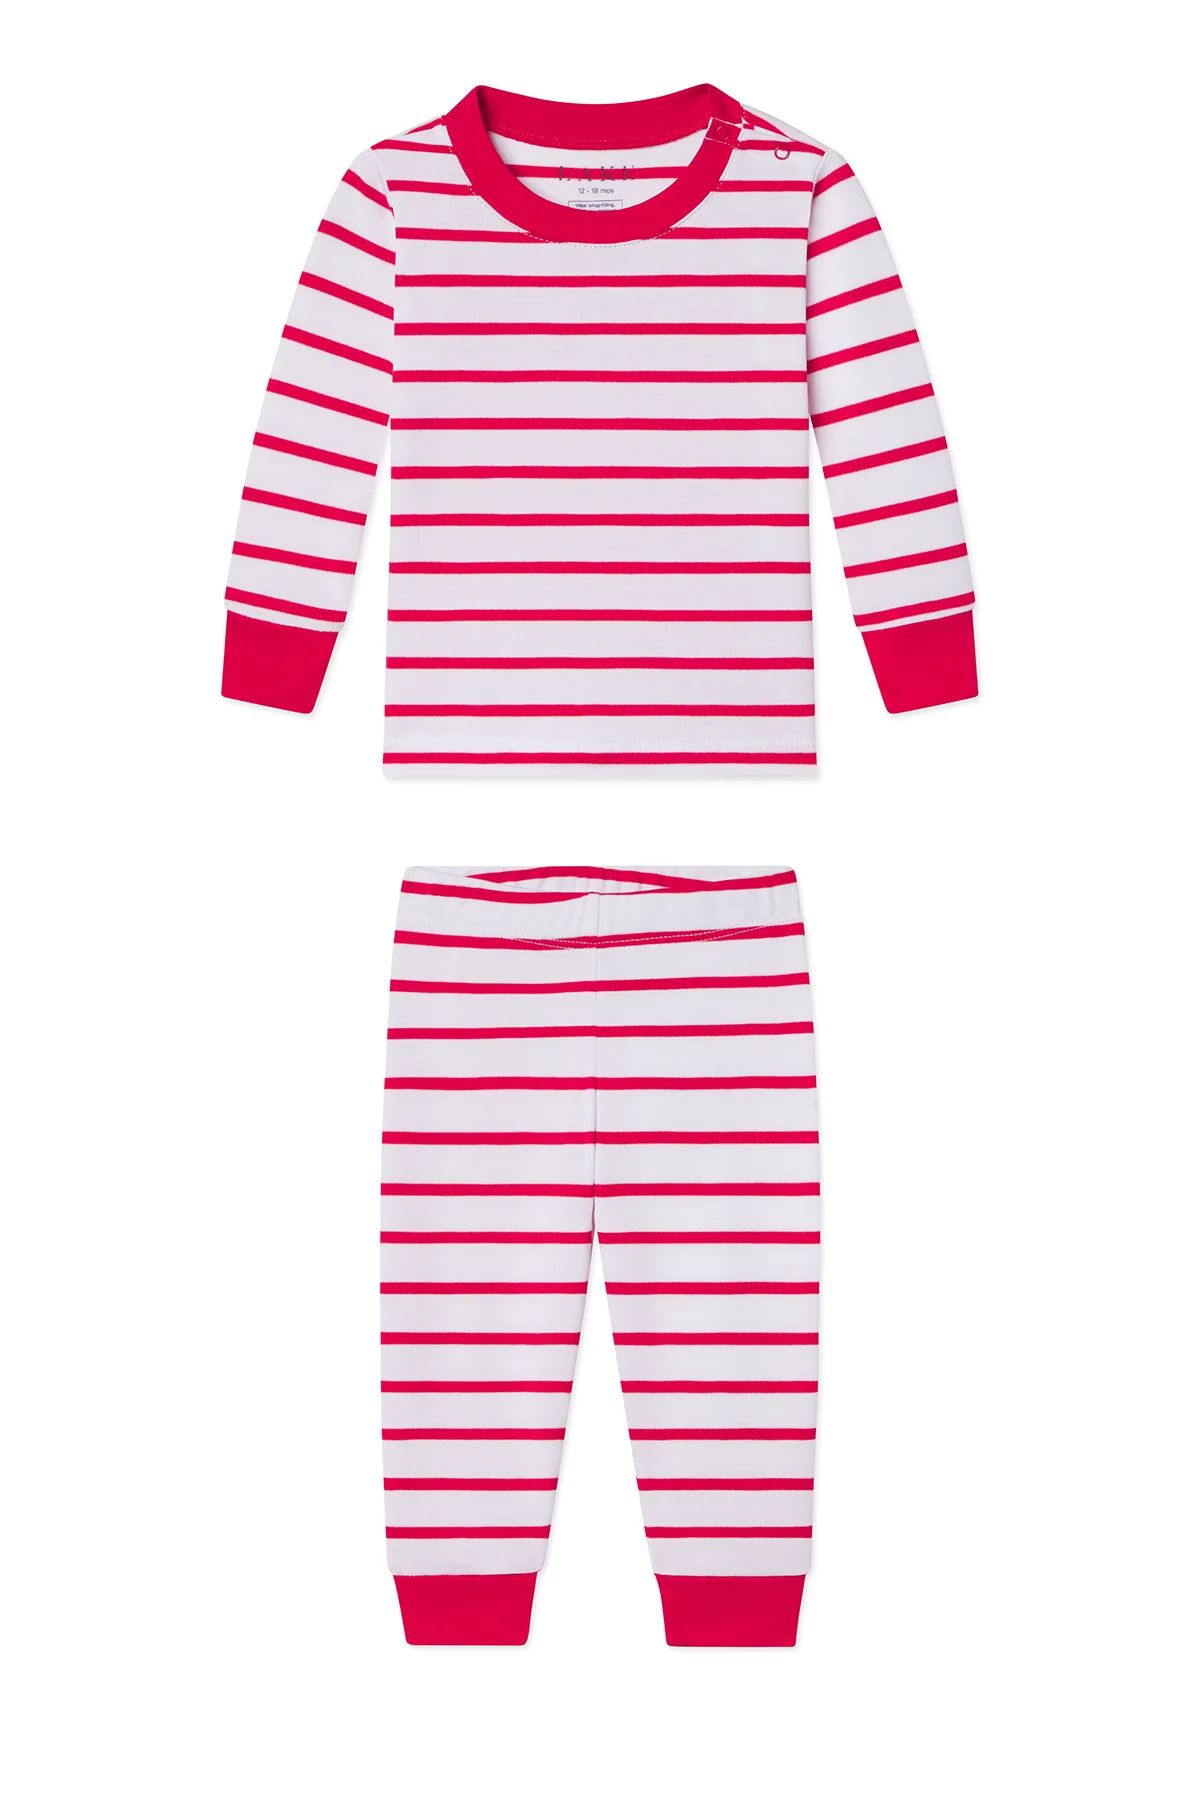 Baby Long-Long Set in Red Stripe | Lake Pajamas